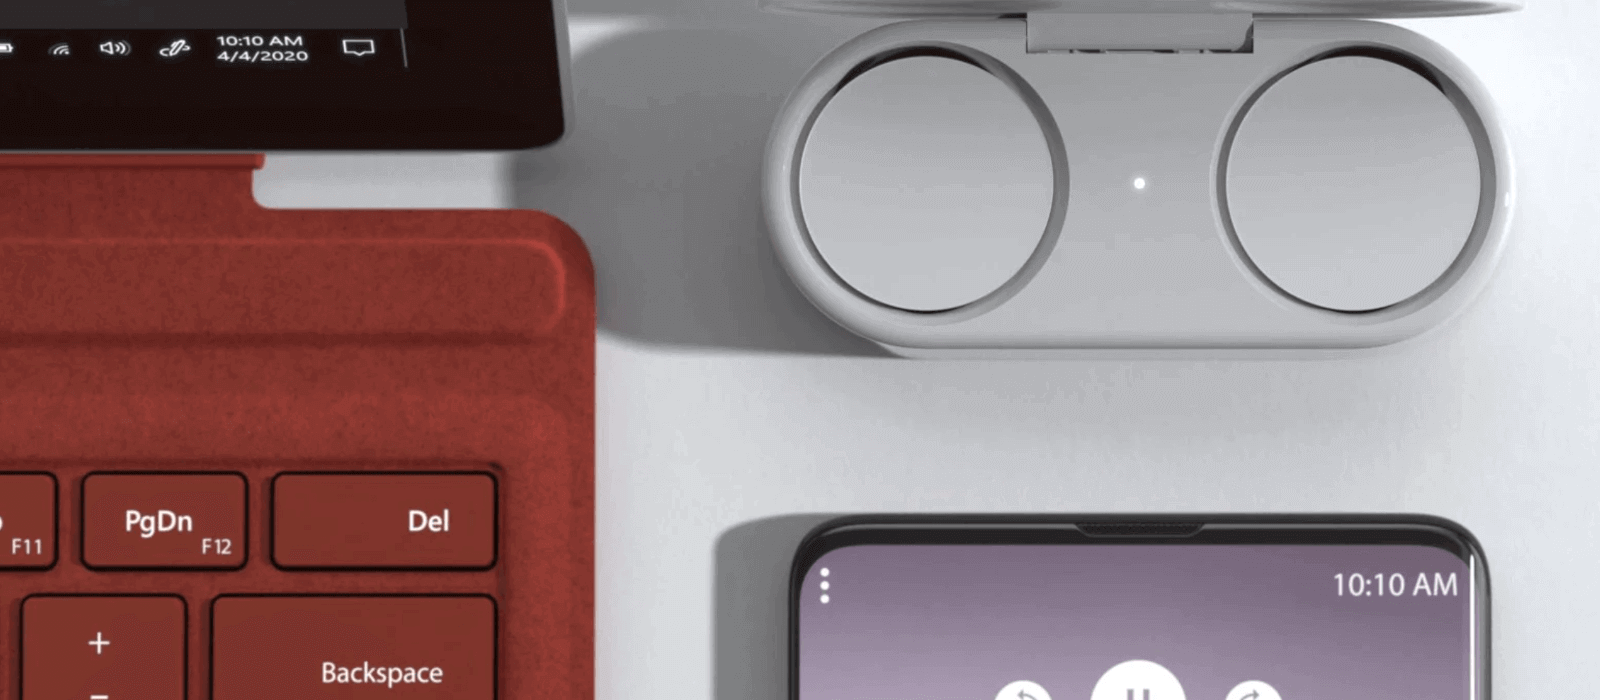 Opladningsetuiet med de medfølgende Surface Earbuds står ved siden af Surface Pro 7 med et valmuerødt Type Cover og en smartphone